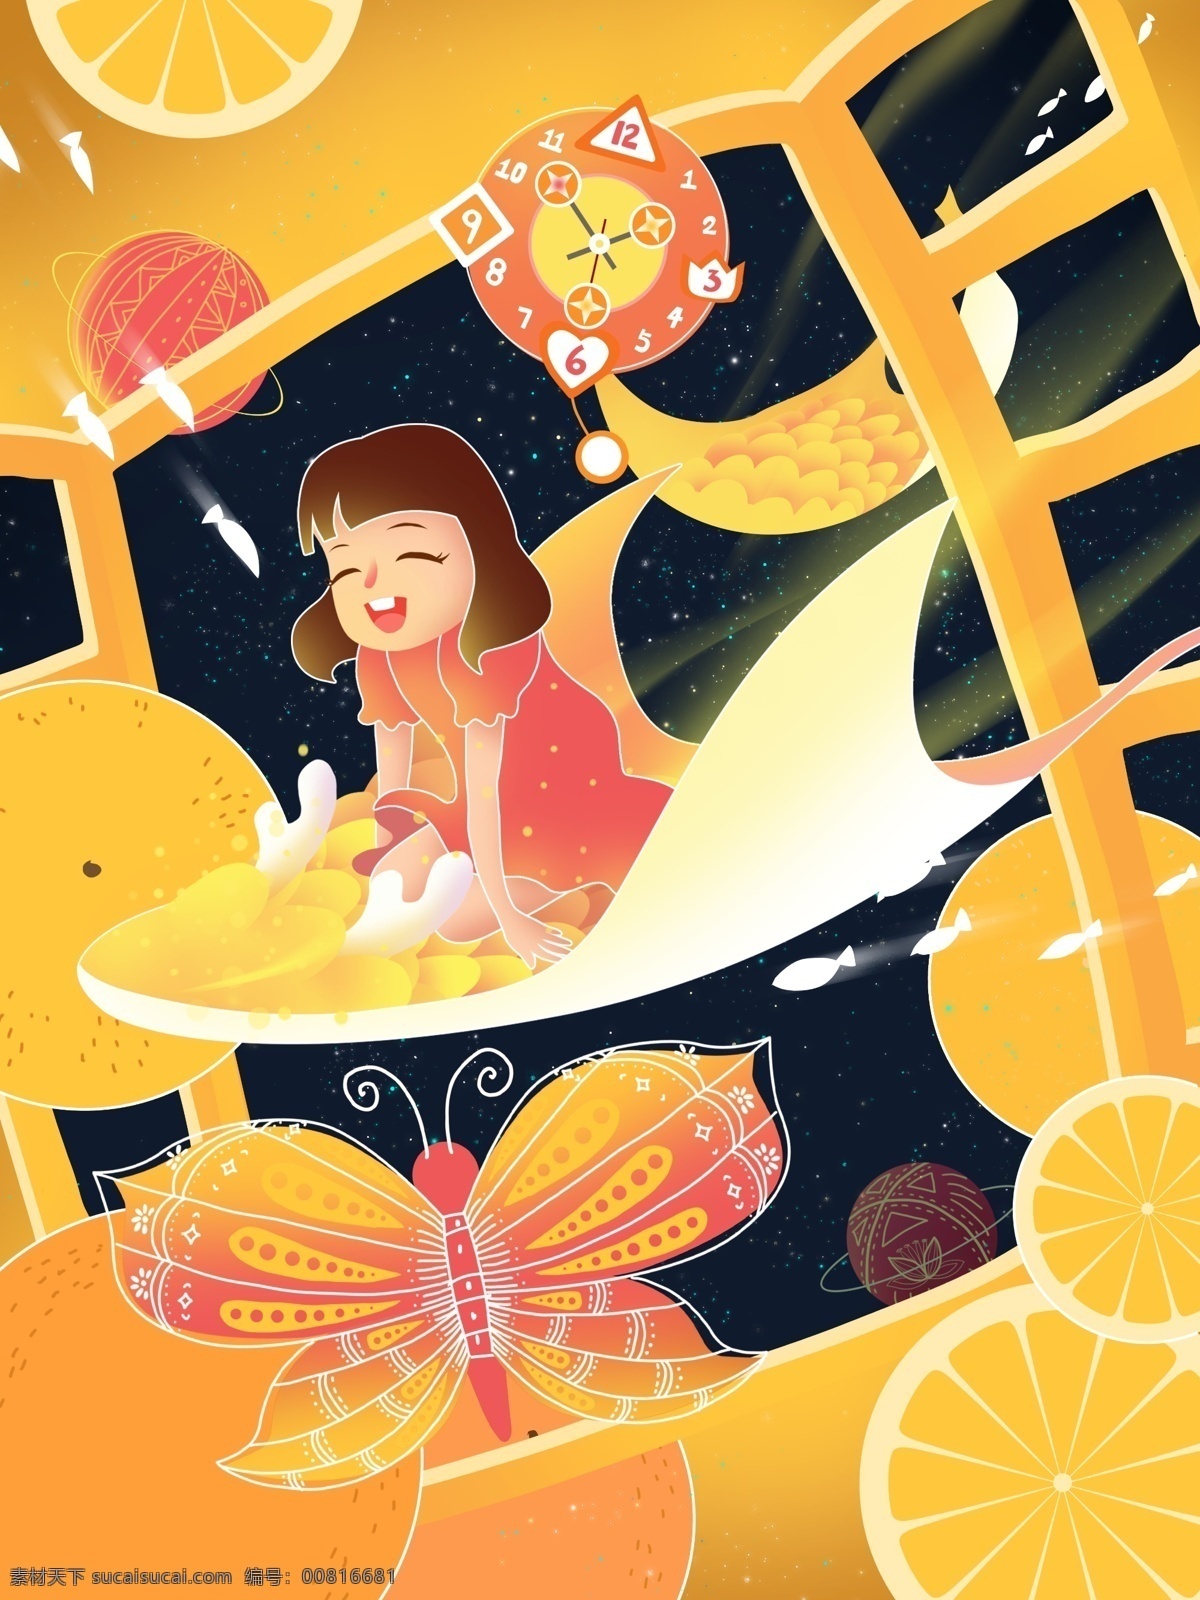 原创 手绘 插画 童年 幻想 女孩 鱼 柠檬 窗 时钟 手绘插画 想象 橘子